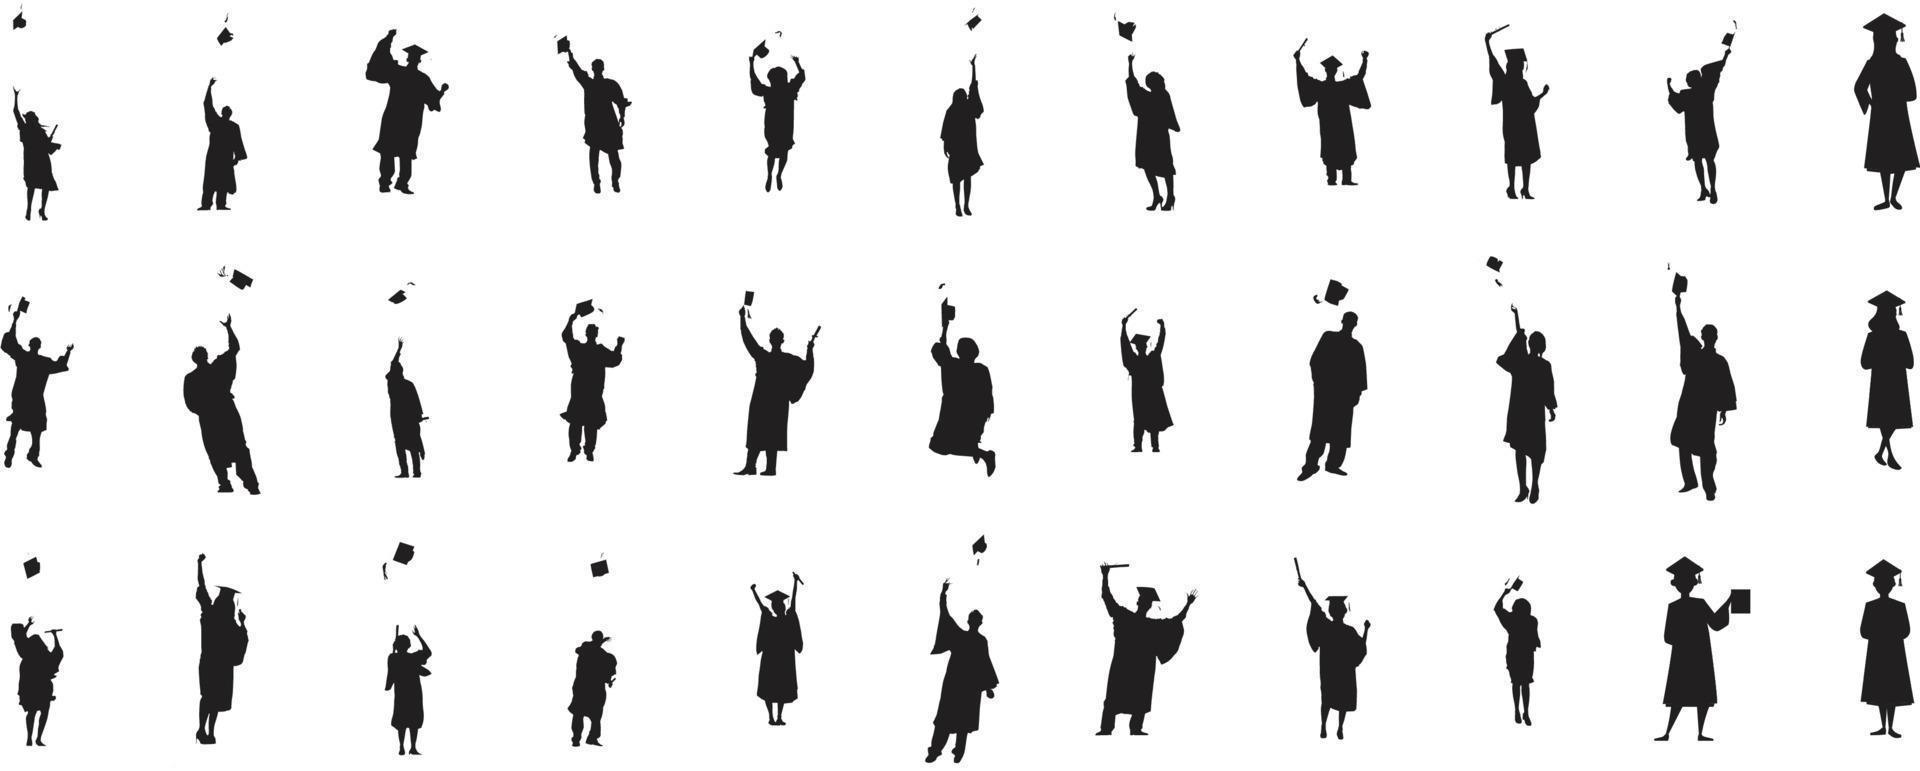 estudiantes graduados felices con gorras de graduación y diploma o certificados, silueta de grupo de personas. evento de graduación. ilustración vectorial vector